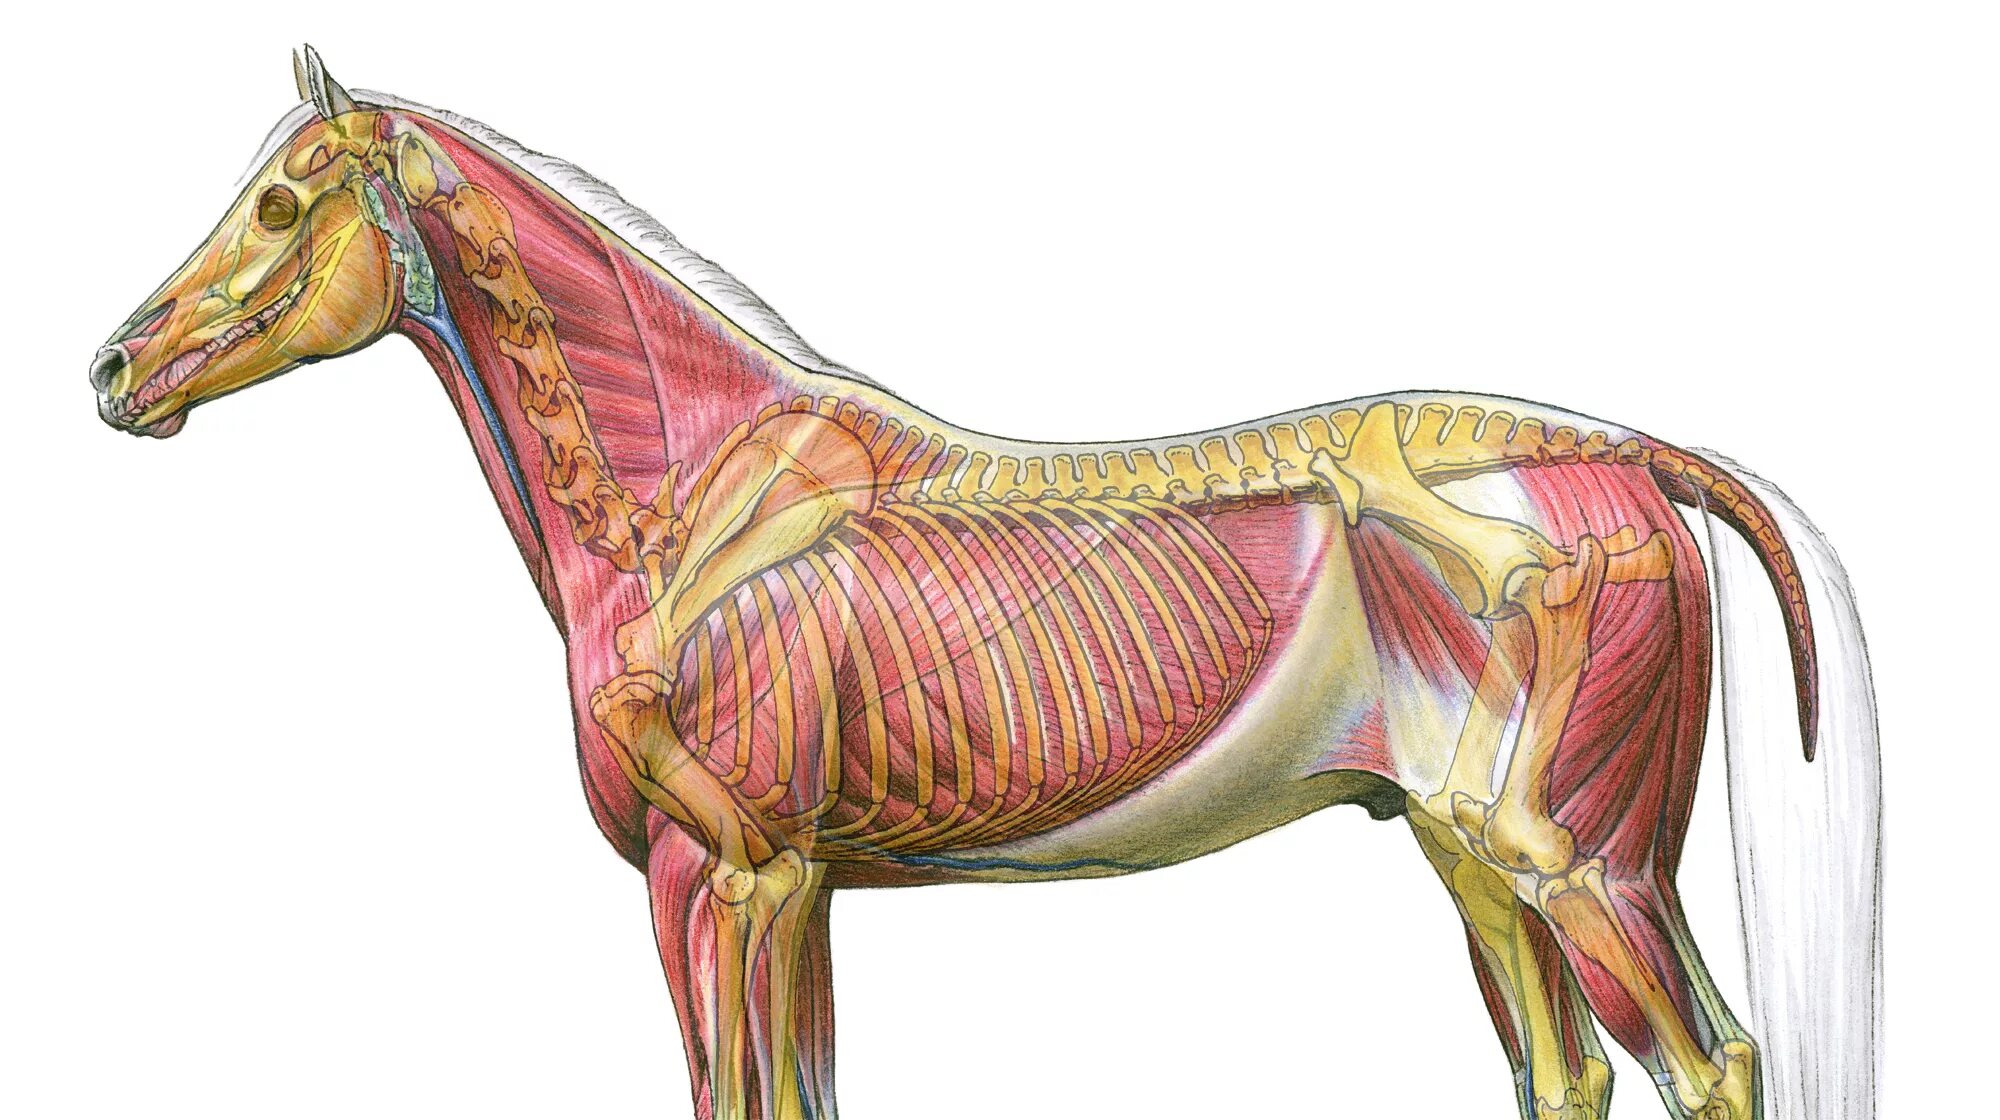 Мускулатура млекопитающих. Мышцы туловища лошади анатомия. Стаббс анатомия лошади. Мышцы лошади анатомия. Мускулатура лошади анатомия.